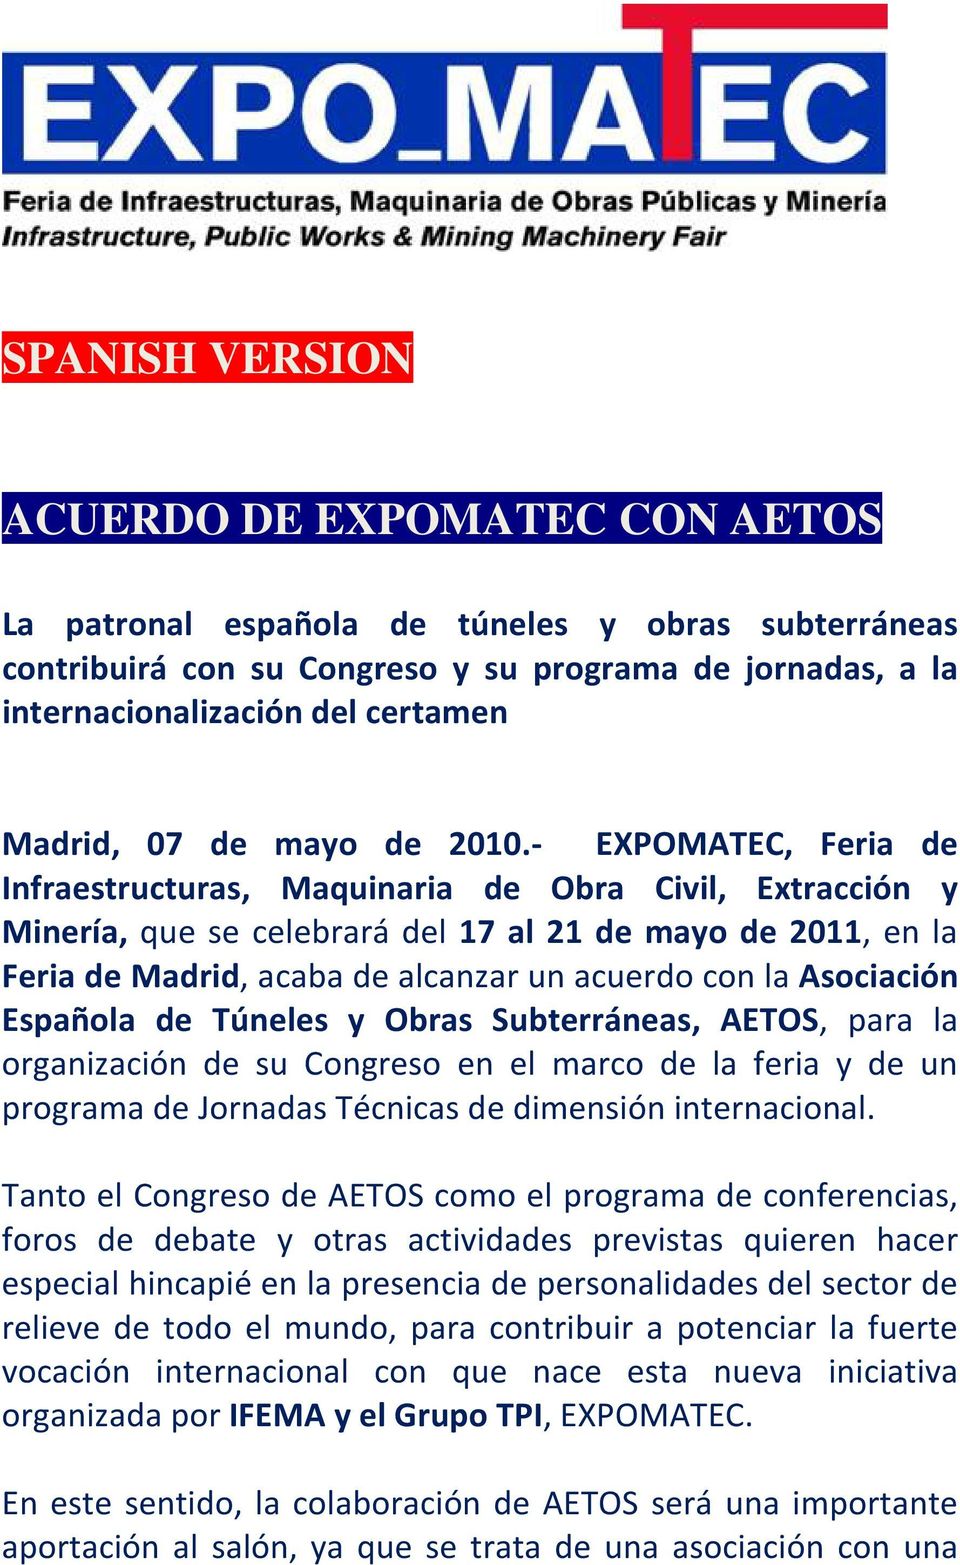 - EXPOMATEC, Feria de Infraestructuras, Maquinaria de Obra Civil, Extracción y Minería, que se celebrará del 17 al 21 de mayo de 2011, en la Feria de Madrid, acaba de alcanzar un acuerdo con la